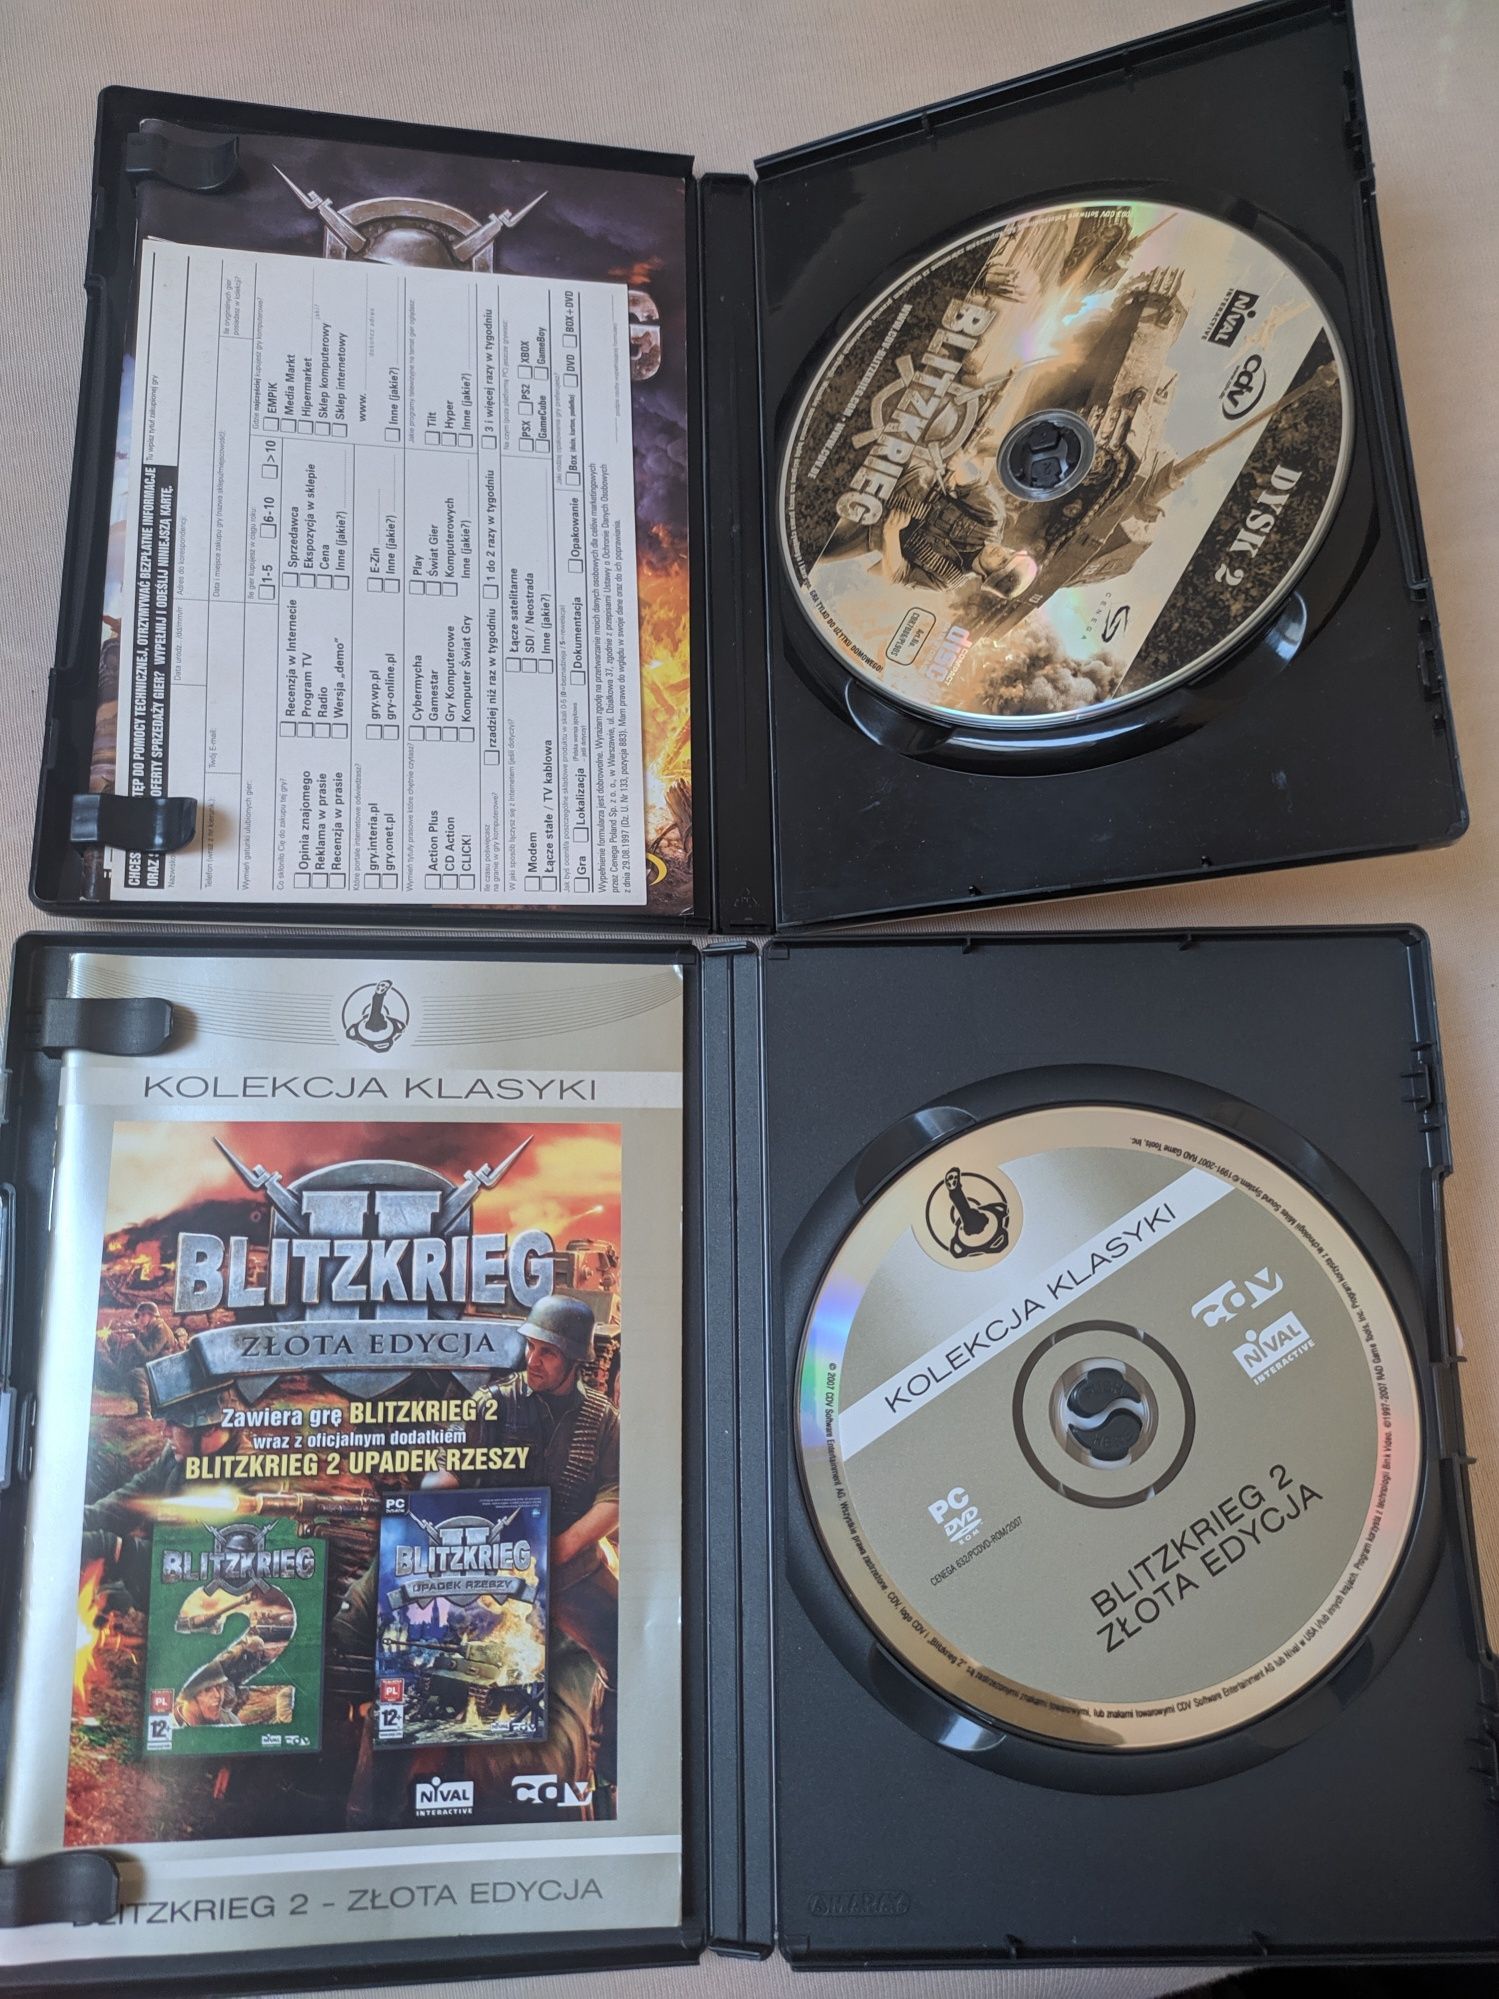 PC Blitzkrieg 1, 2, złota edycja, upadek rzeszy, horyzont w ogniu